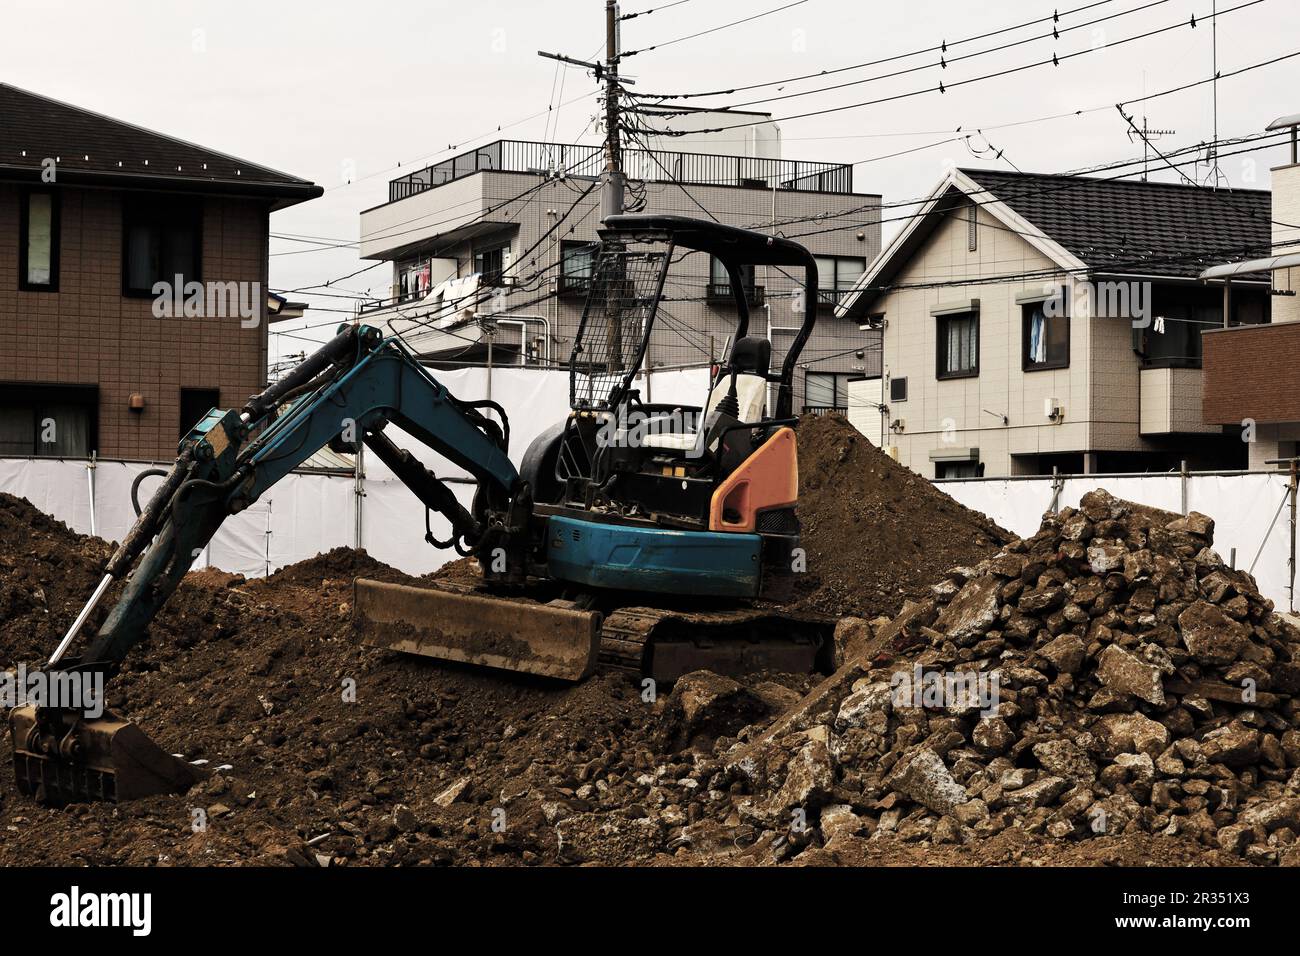 Baustelle in einem Wohngebiet, auf dem ein kleiner Bagger zum Nivellieren des Bodens verwendet wird Stockfoto